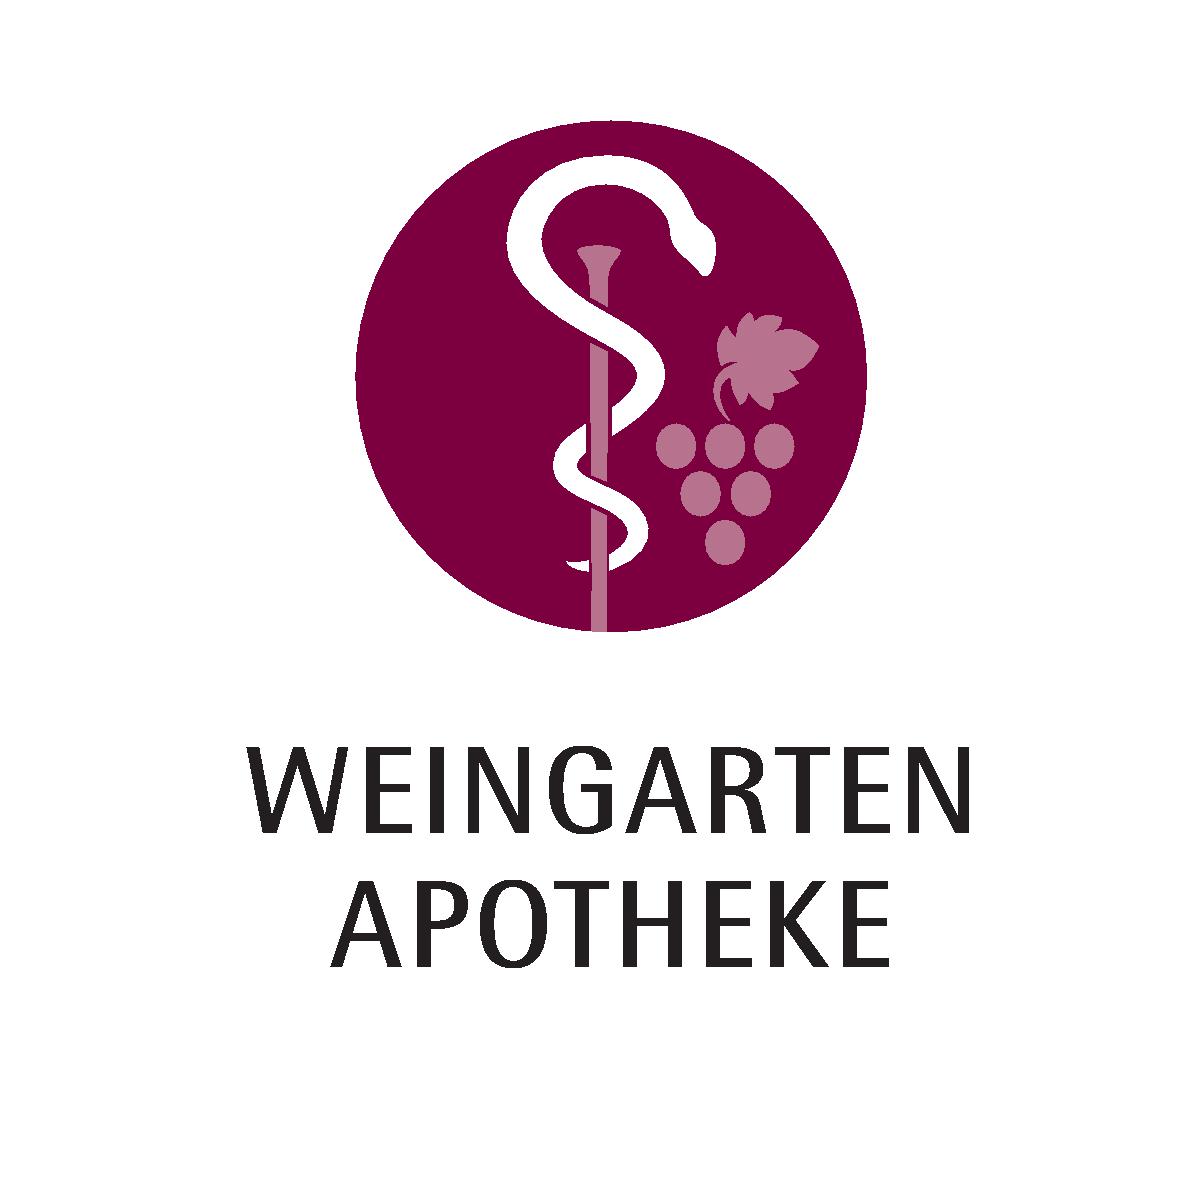 Weingarten Apotheke